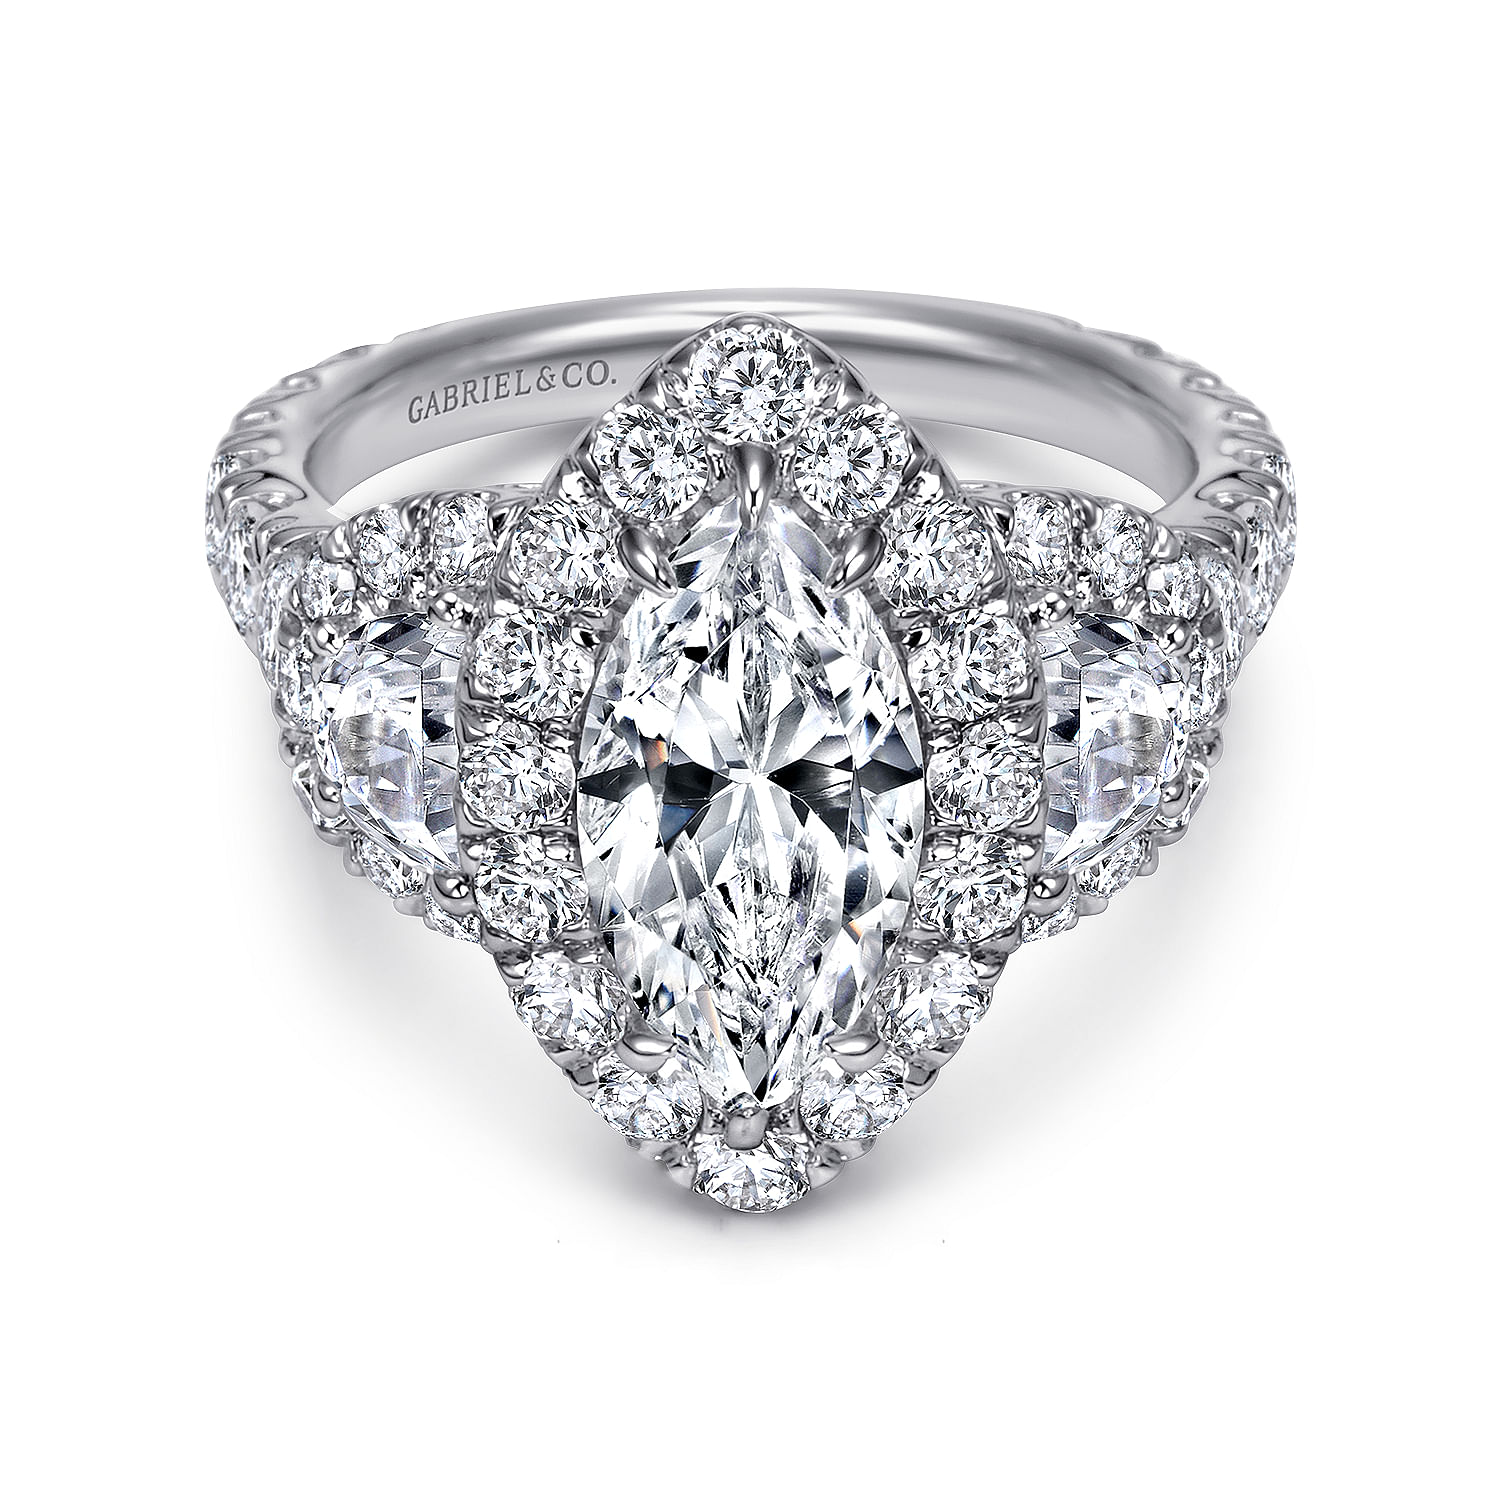 Eve---14K-White-Gold-Marquise-Shape-Three-Stone-Halo-Diamond-Engagement-Ring1